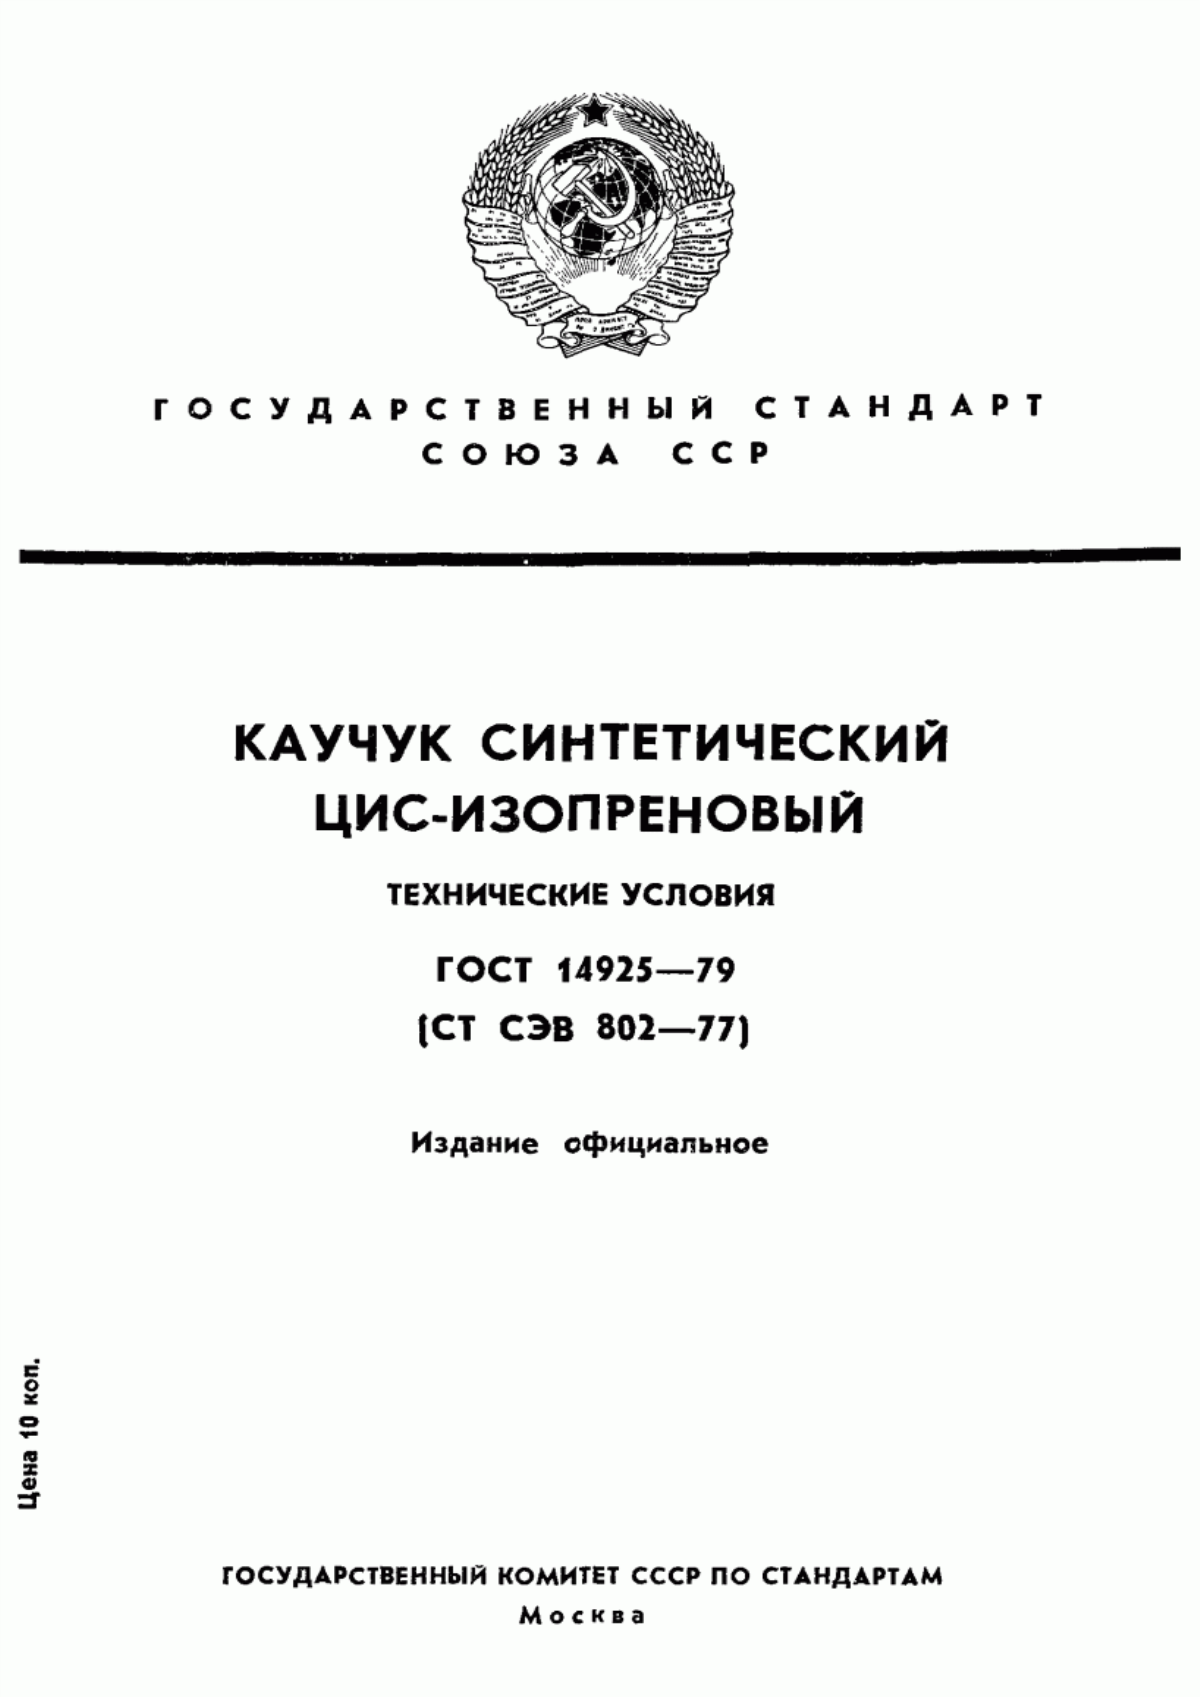 ГОСТ 14925-79 Каучук синтетический цис-изопреновый. Технические условия